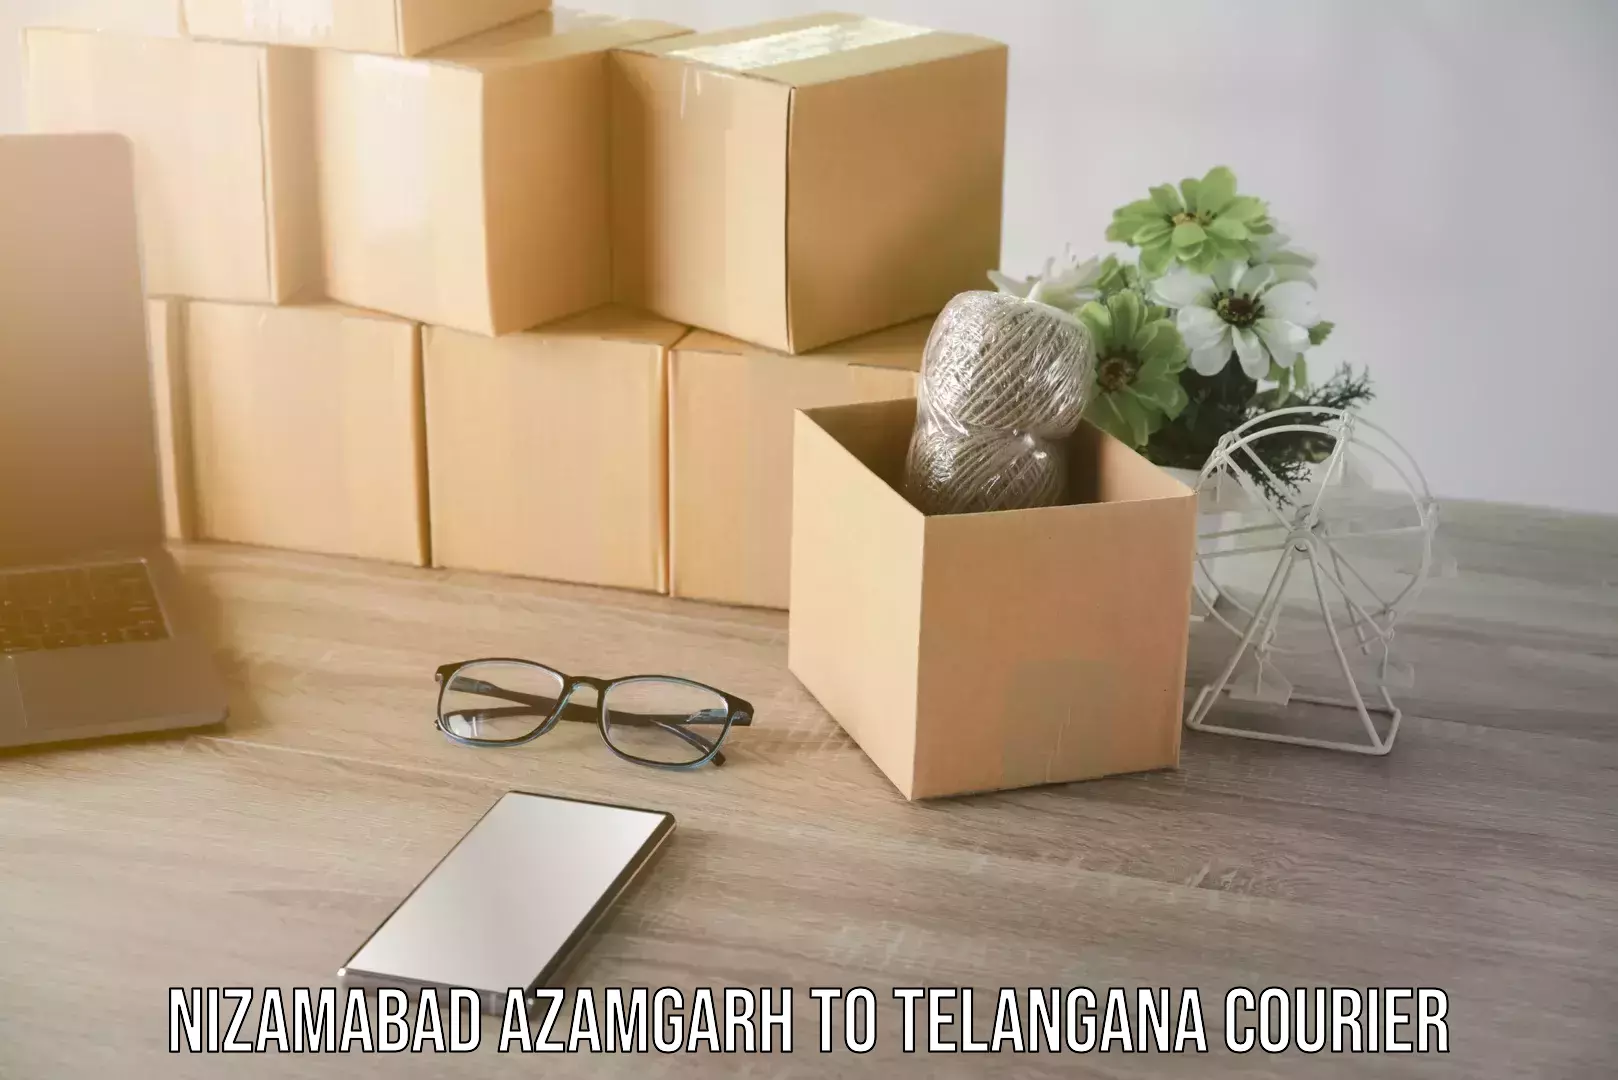 Furniture moving experts Nizamabad Azamgarh to Telangana